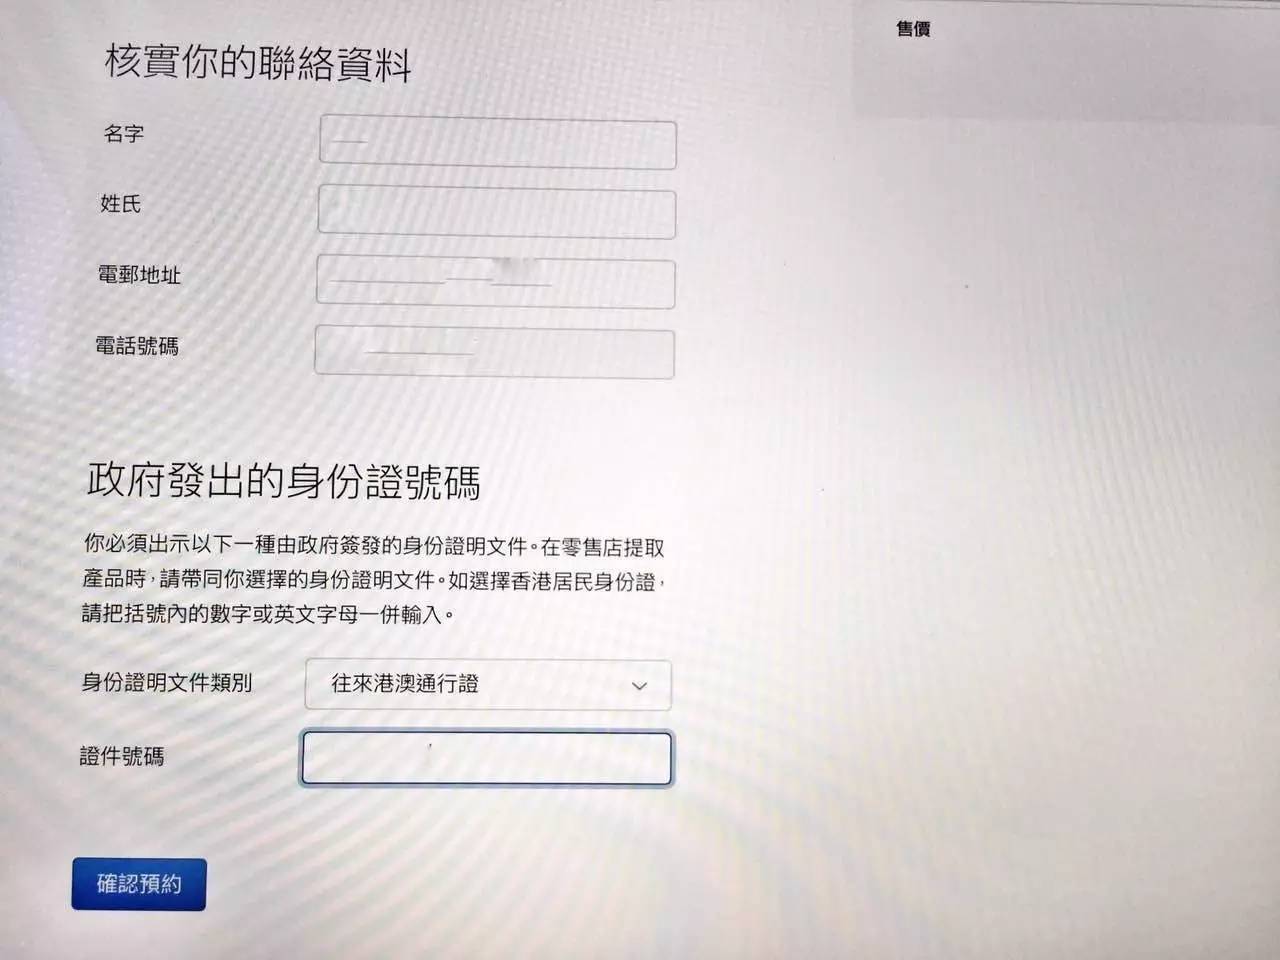 中国香港购iPhone7感受：门坎高些，亮黑压根抢不上